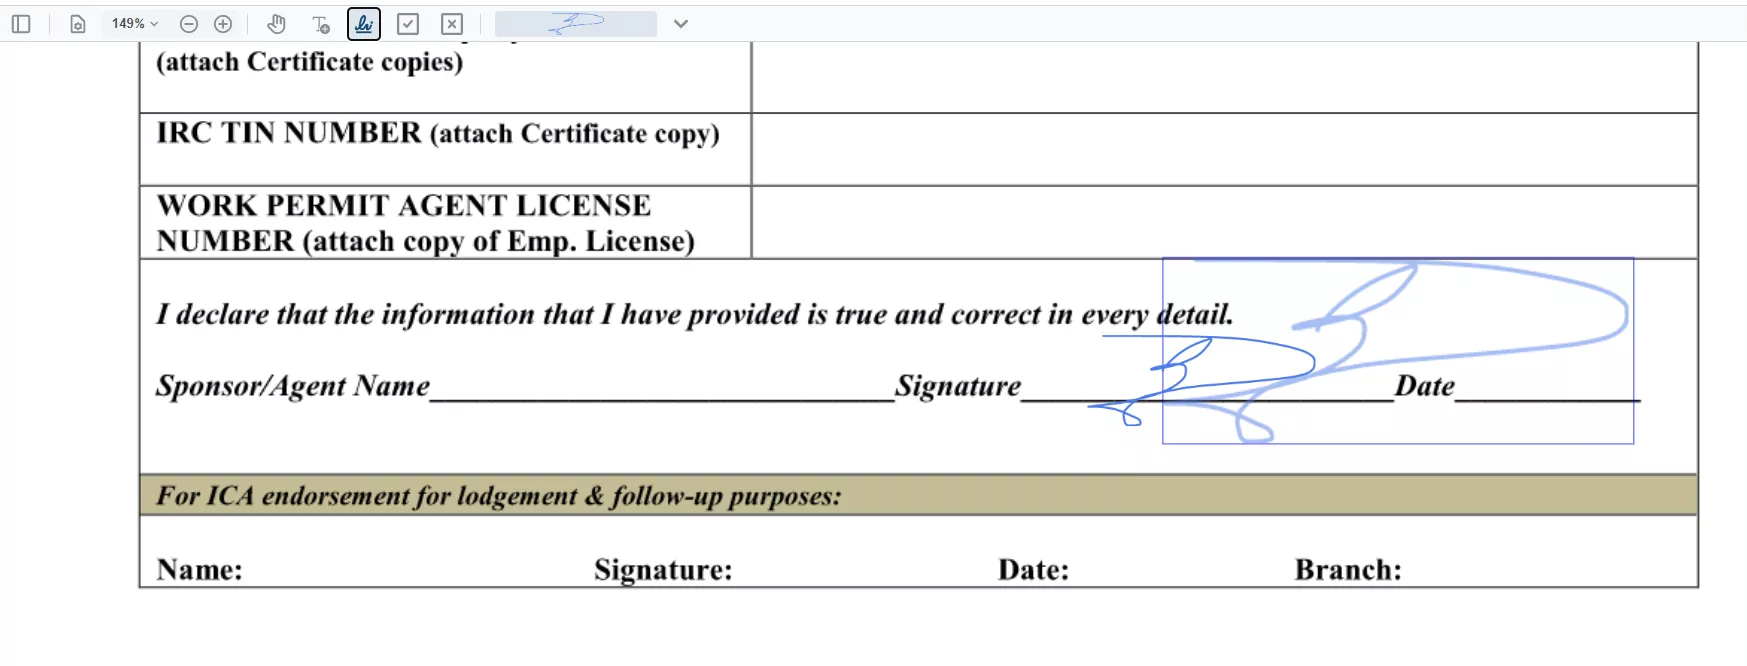 L'outil Signature dans le remplir de formulaire
PDF